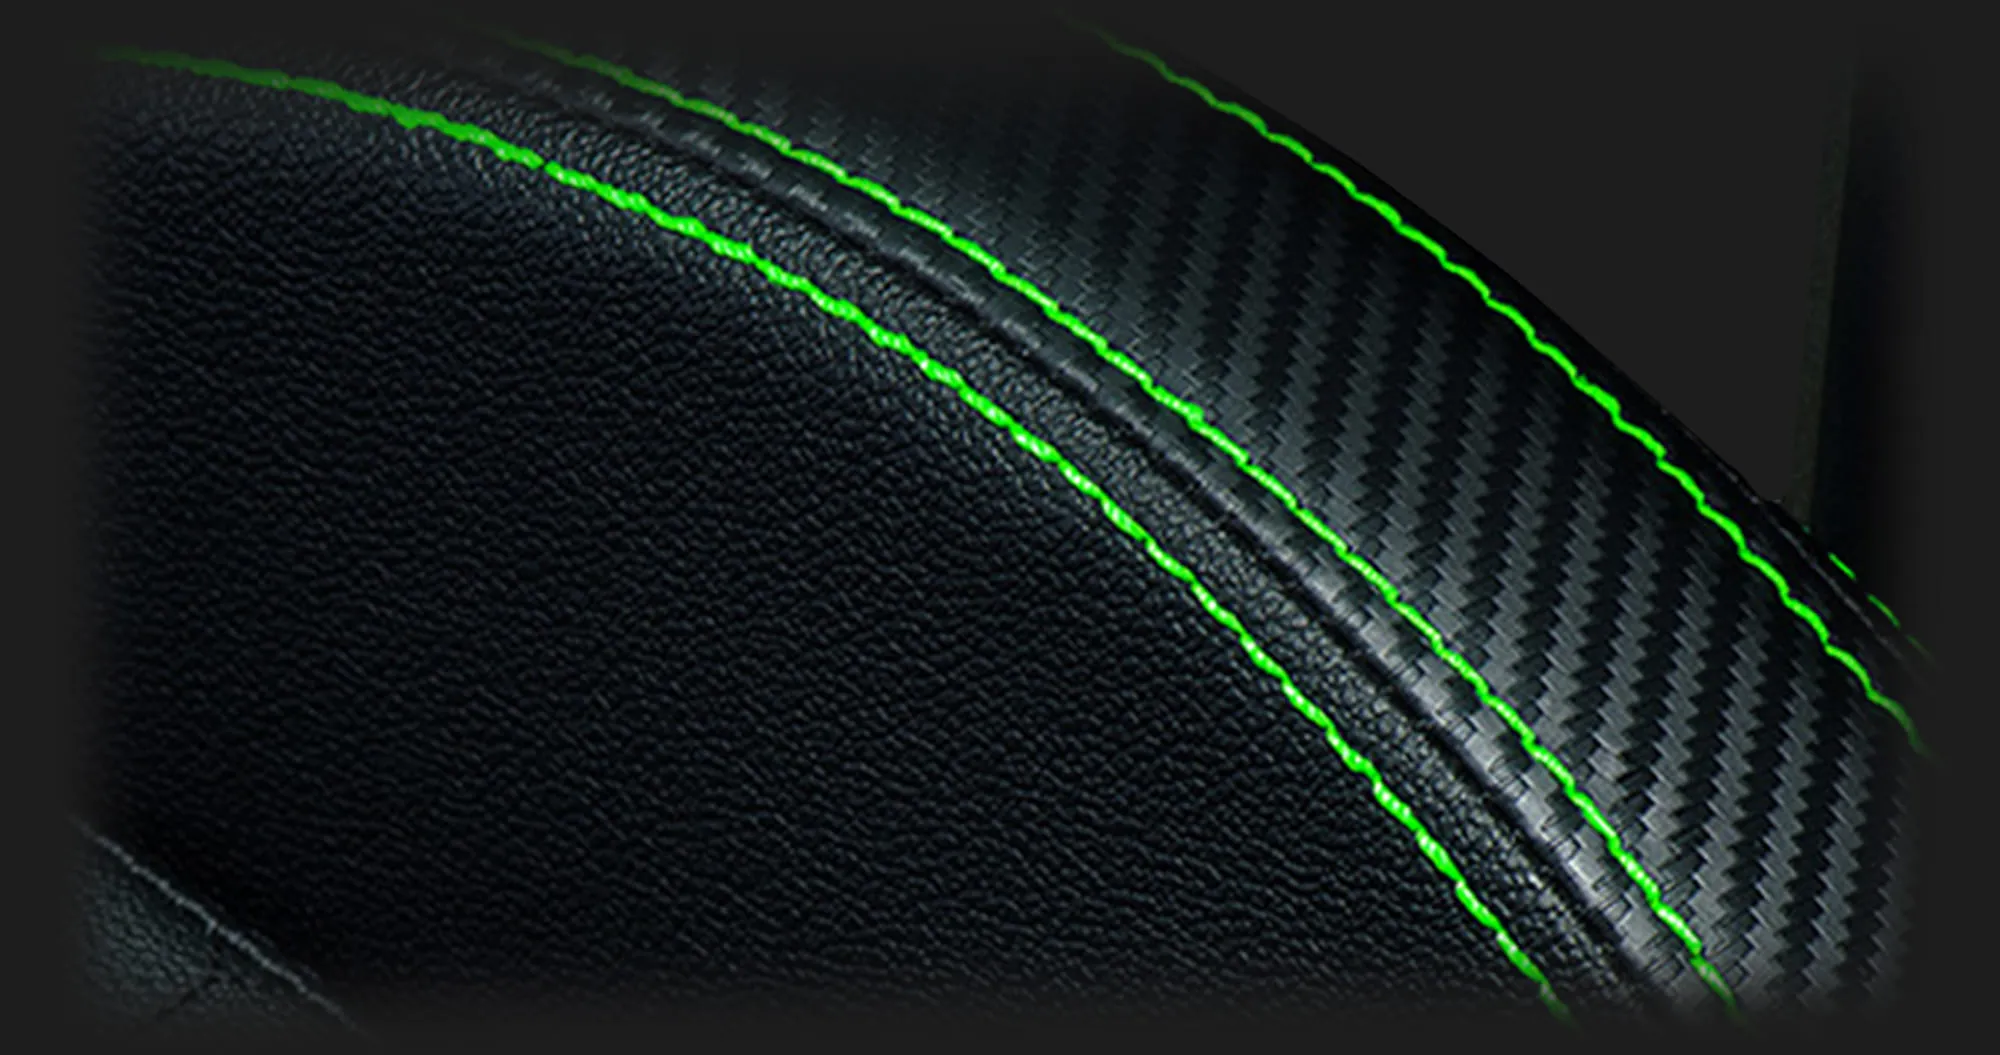 Крісло для геймерів Razer Iskur Leather XL (Black)